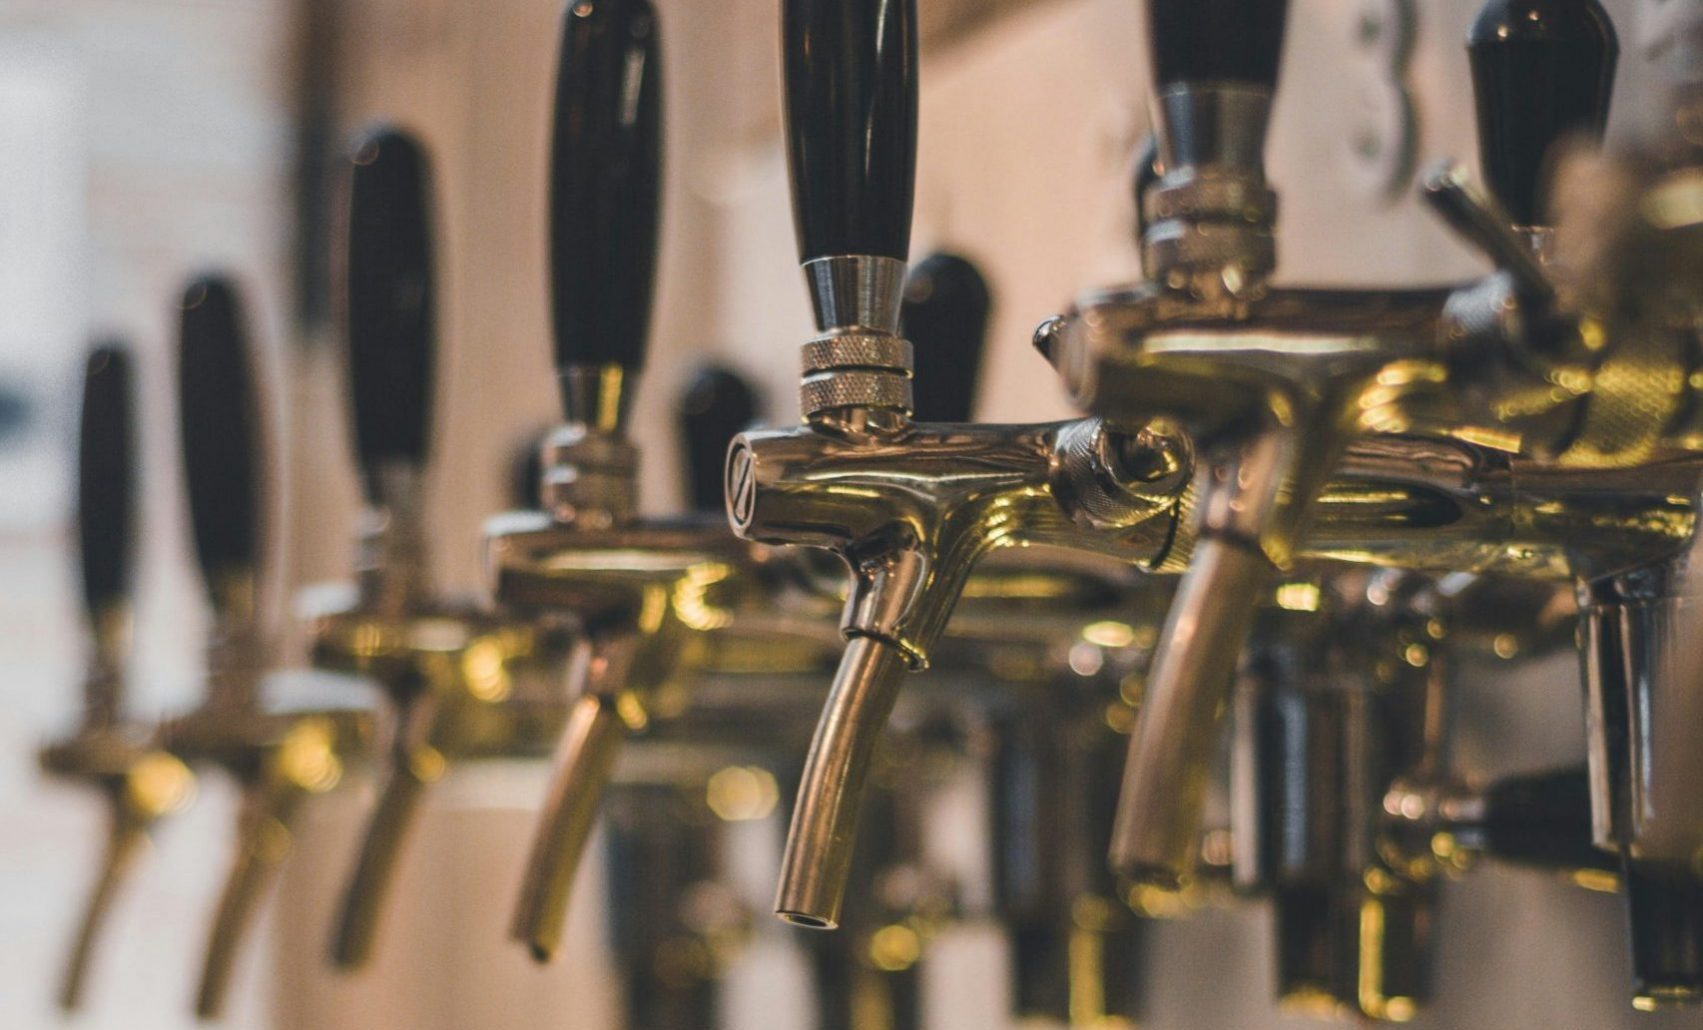 Row of beer taps